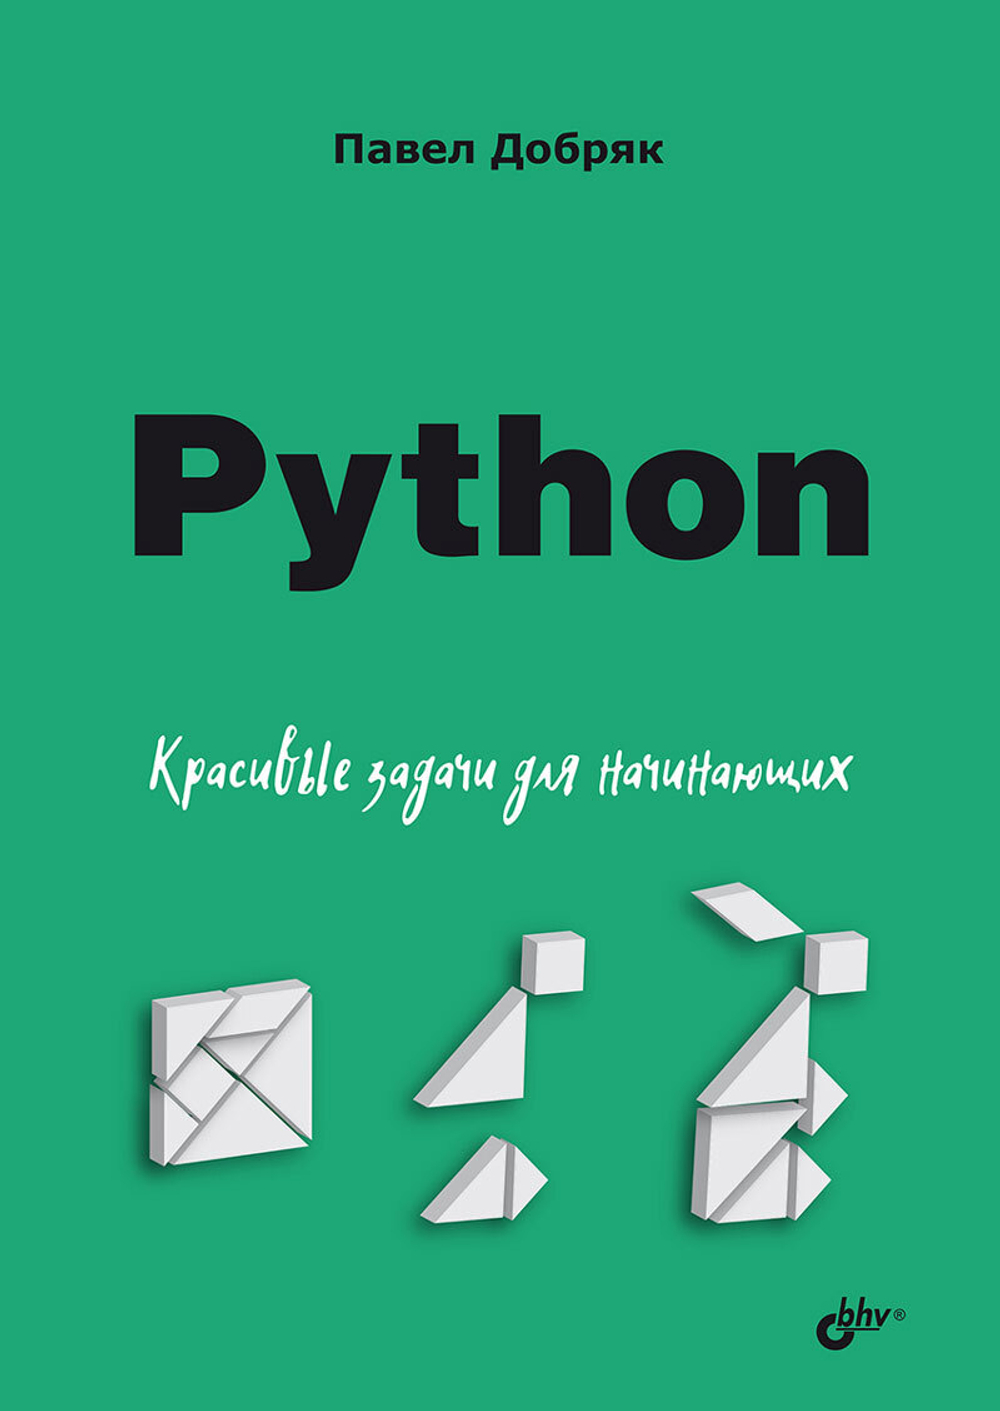 Книга: Добряк П. "Python. Красивые задачи для начинающих"